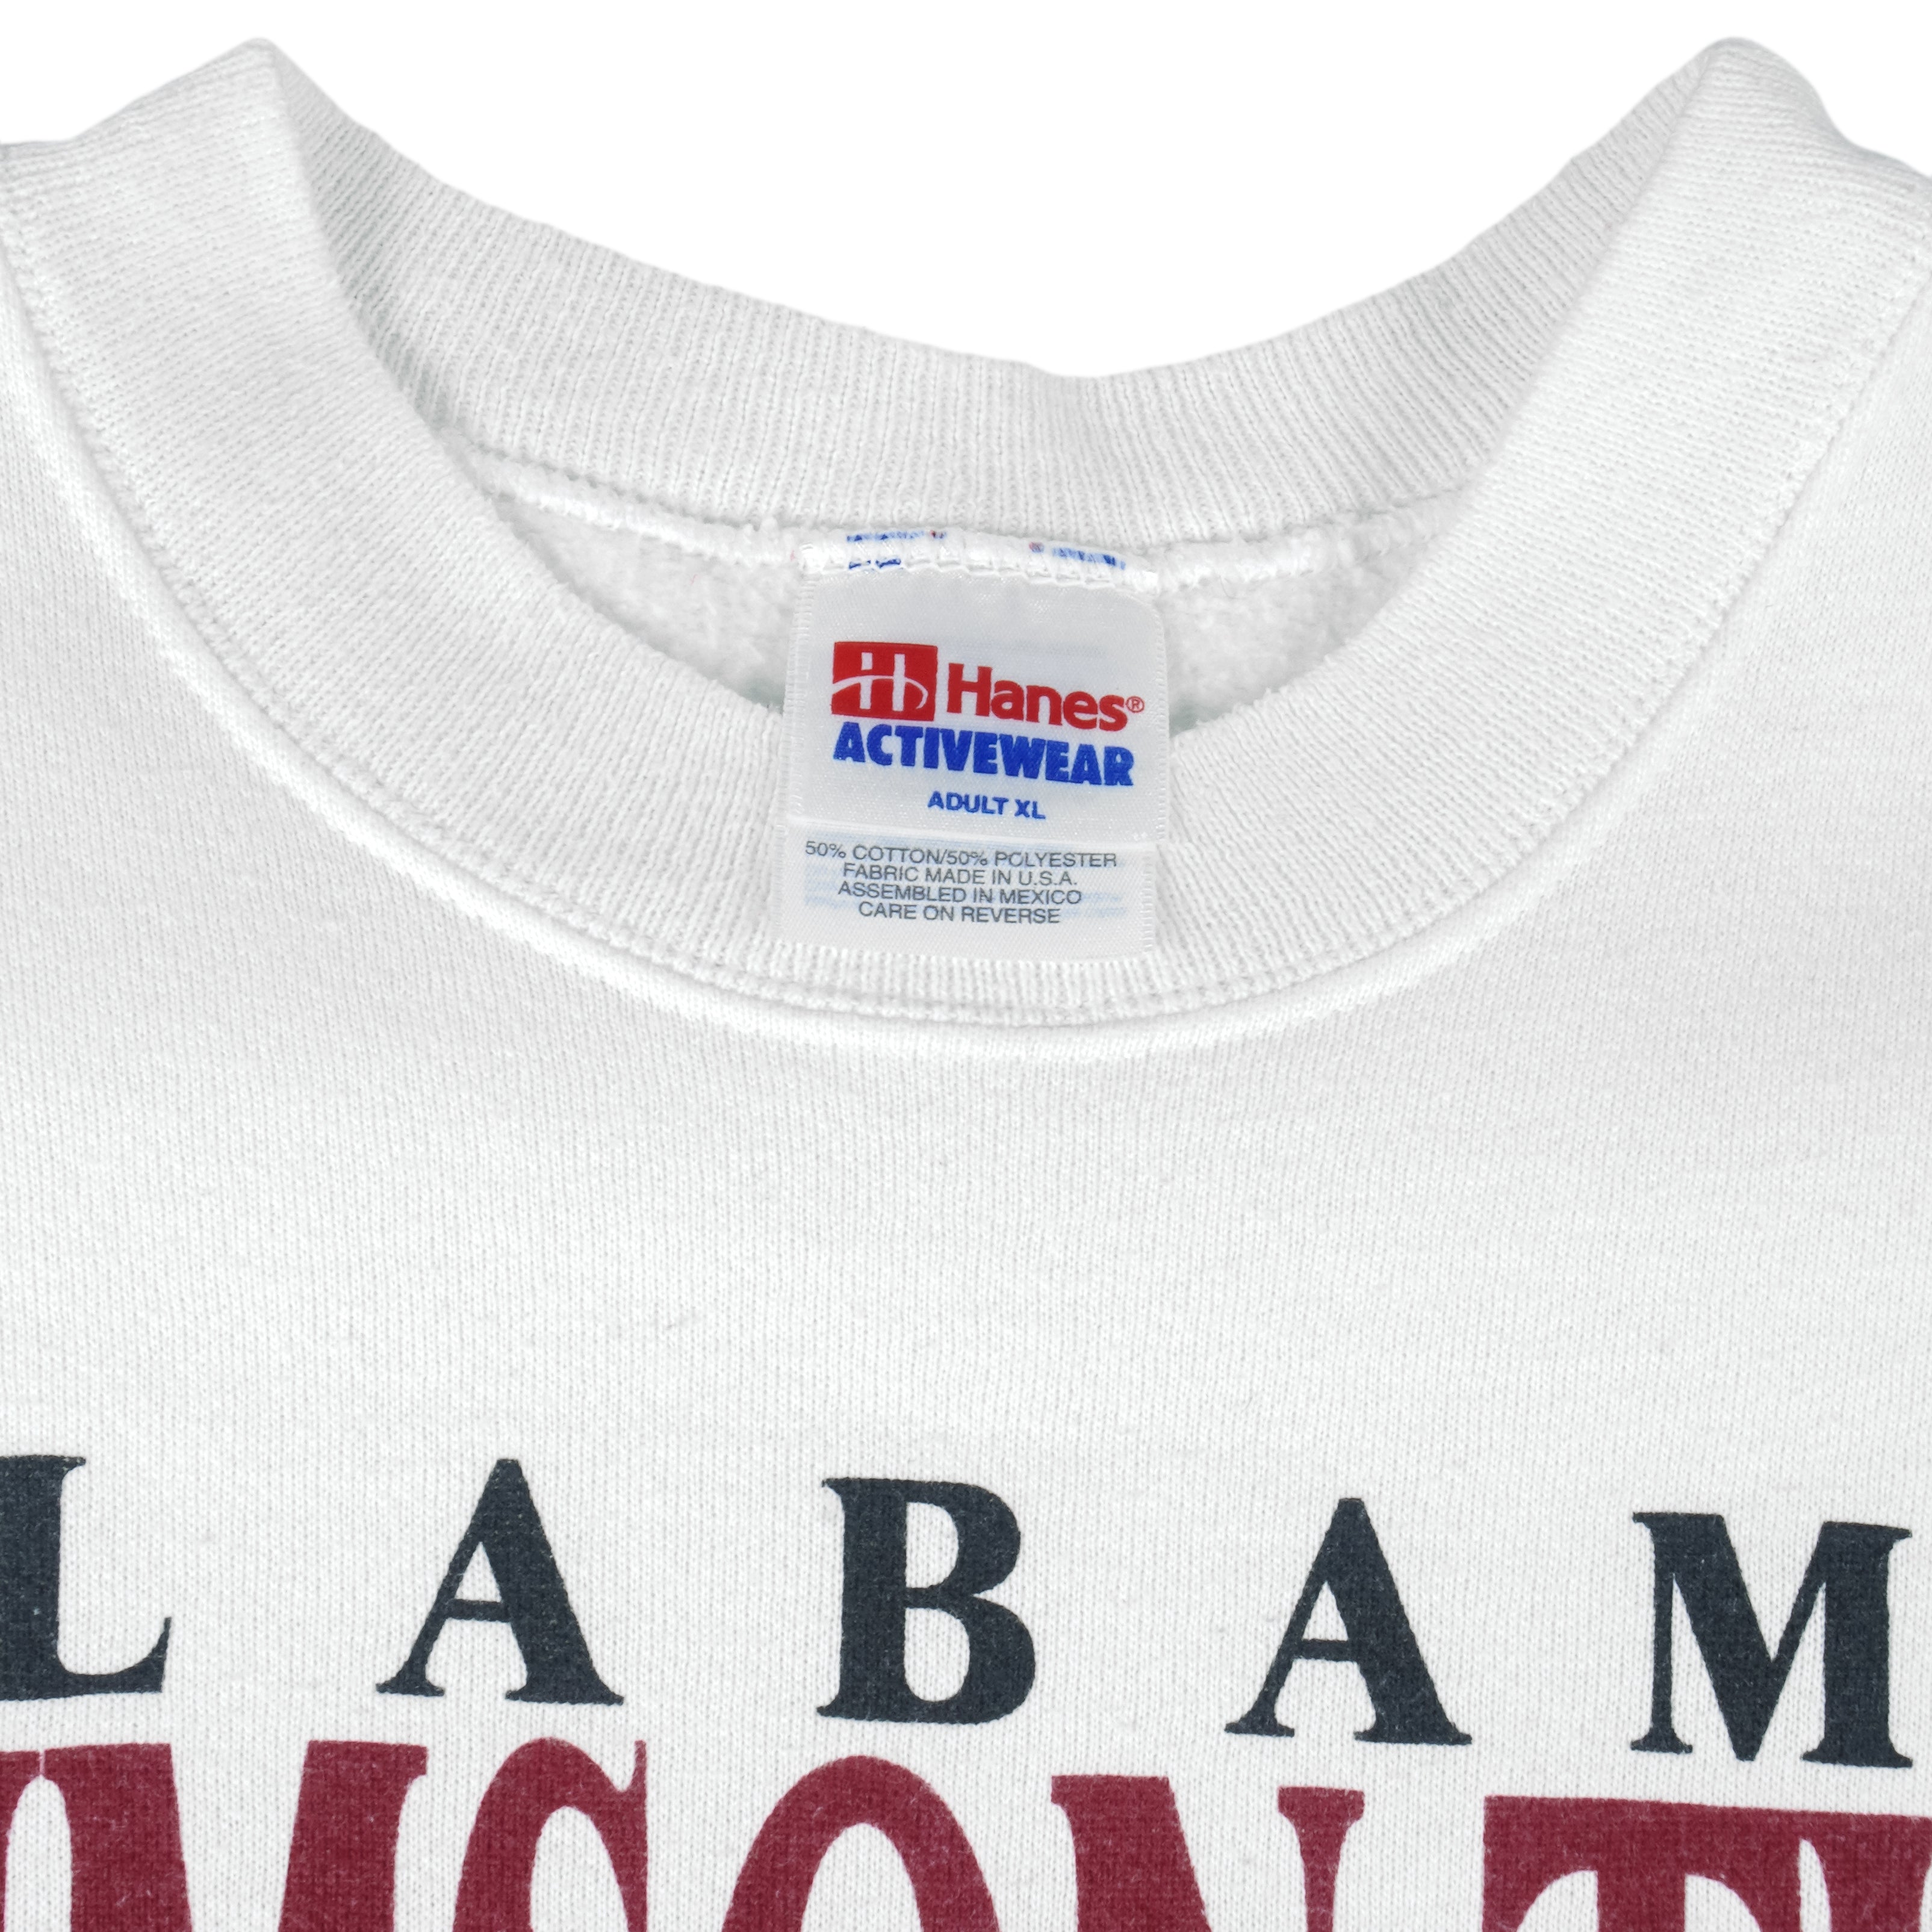 Alabama Crimson Tide: University Throwback, Hoodie / Extra Large - NCAA - Sports Fan Gear | breakingt